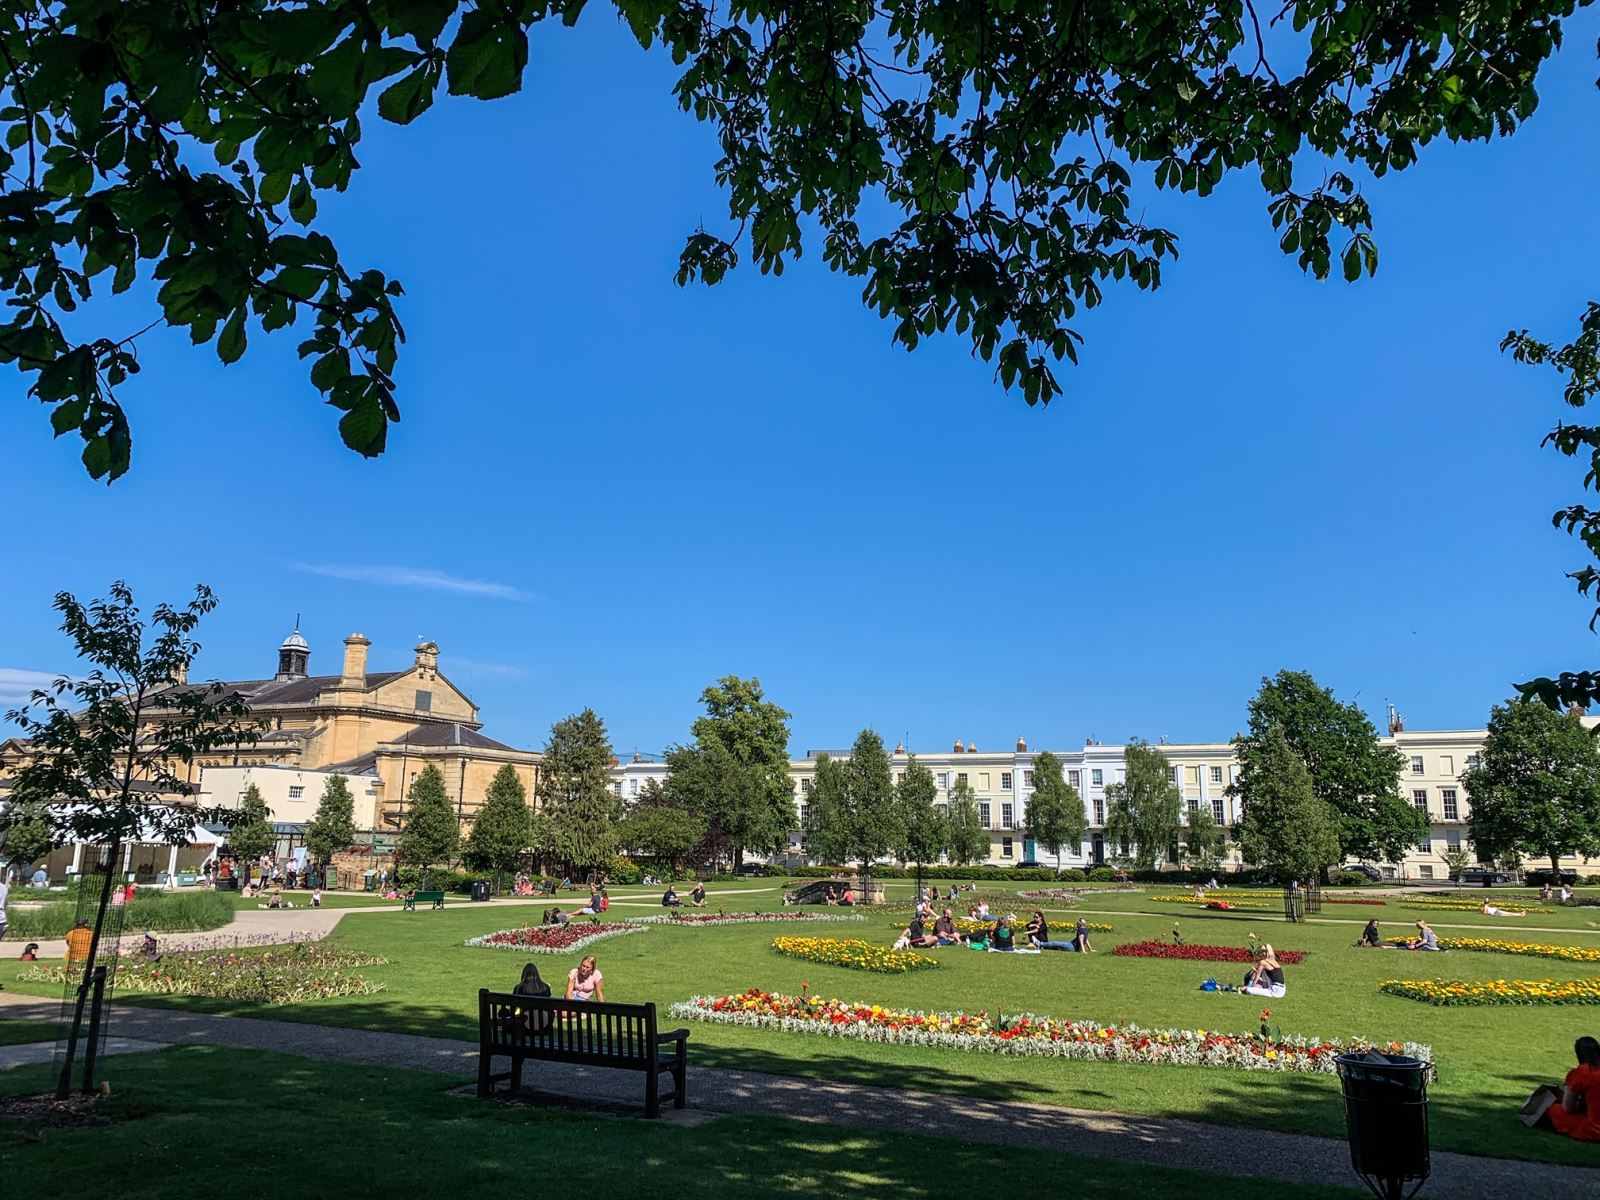 Best picnic spots in Cheltenham - Imperial Gardens